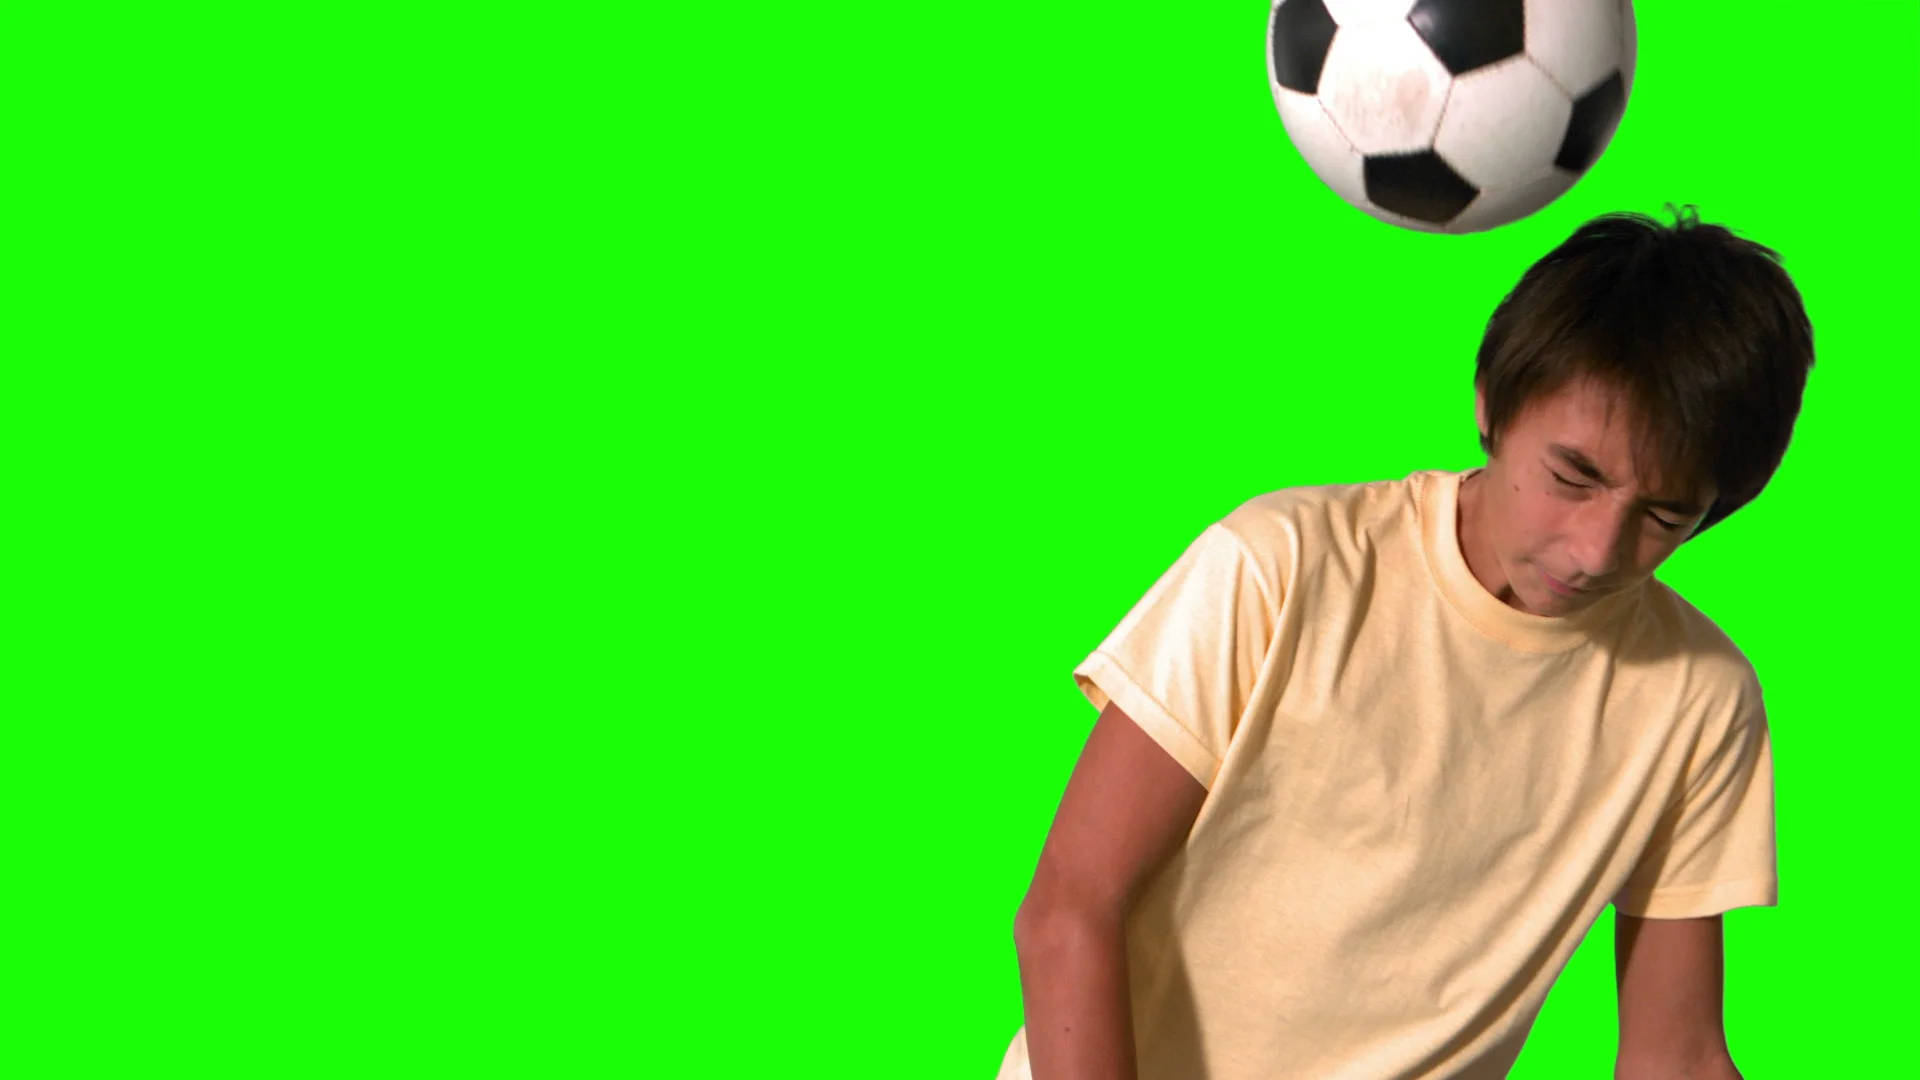 Soccer Ball Greenscreen Background Wallpaper